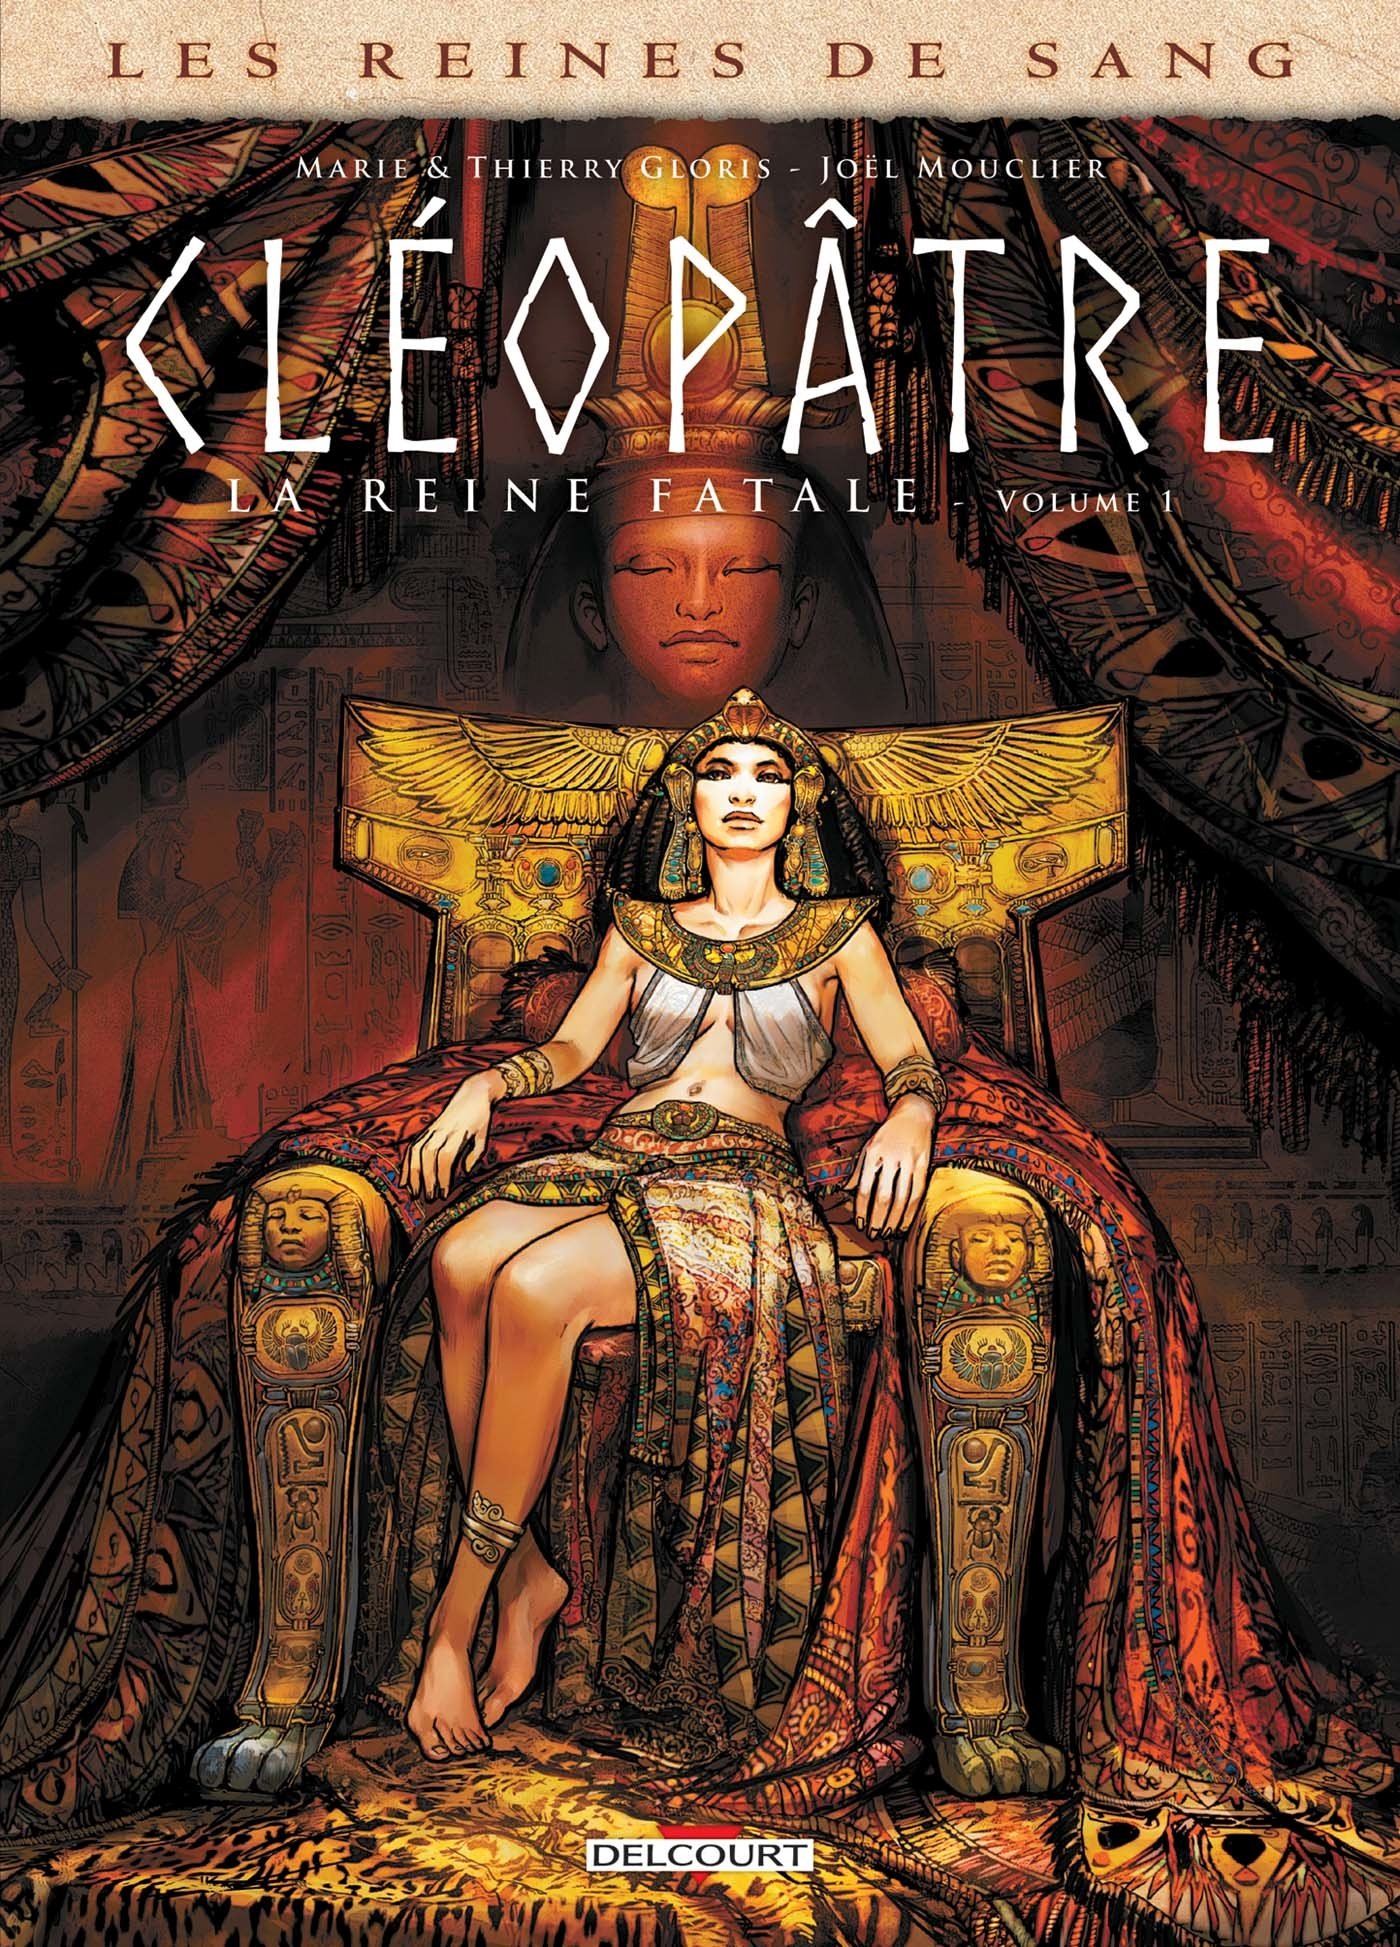 Les reines de sang : Cléopâtre, la reine fatale Tome 1 / Marie et Thierry Gloris & Joël Mouclier